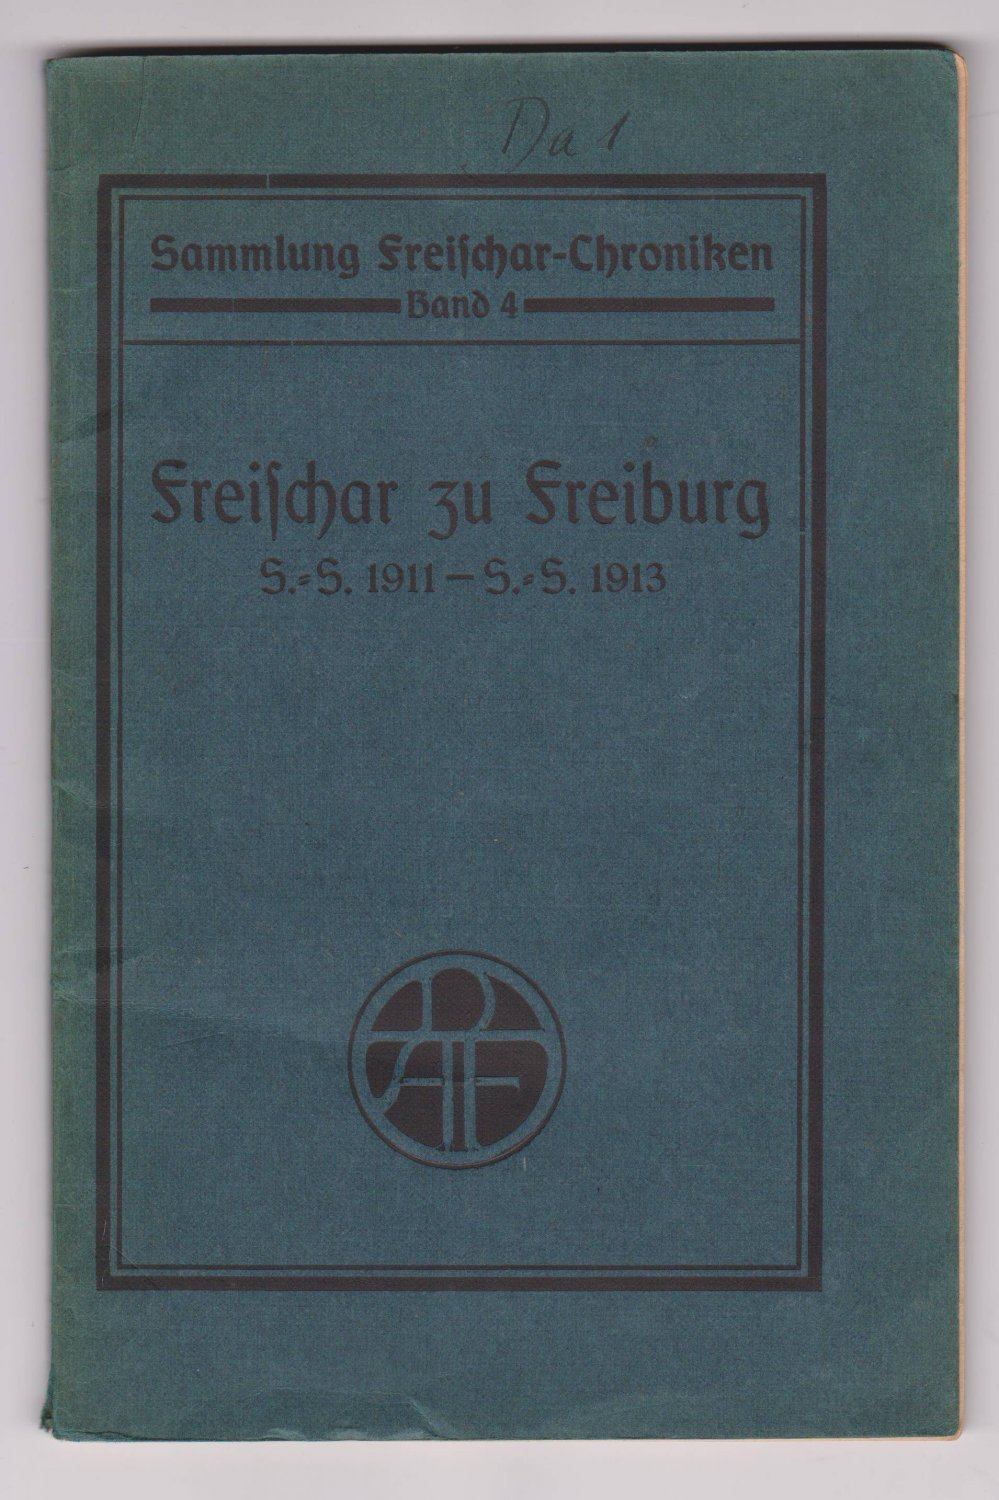 FREISCHAR zu Freiburg / Deutsche Akademische Freischar. -   Die ersten fünf Semester der Freischar zu Freiburg. / S.-S. 1911 - S.-S. 1913. Zusammengestellt im Januar u. Februar 1914. 